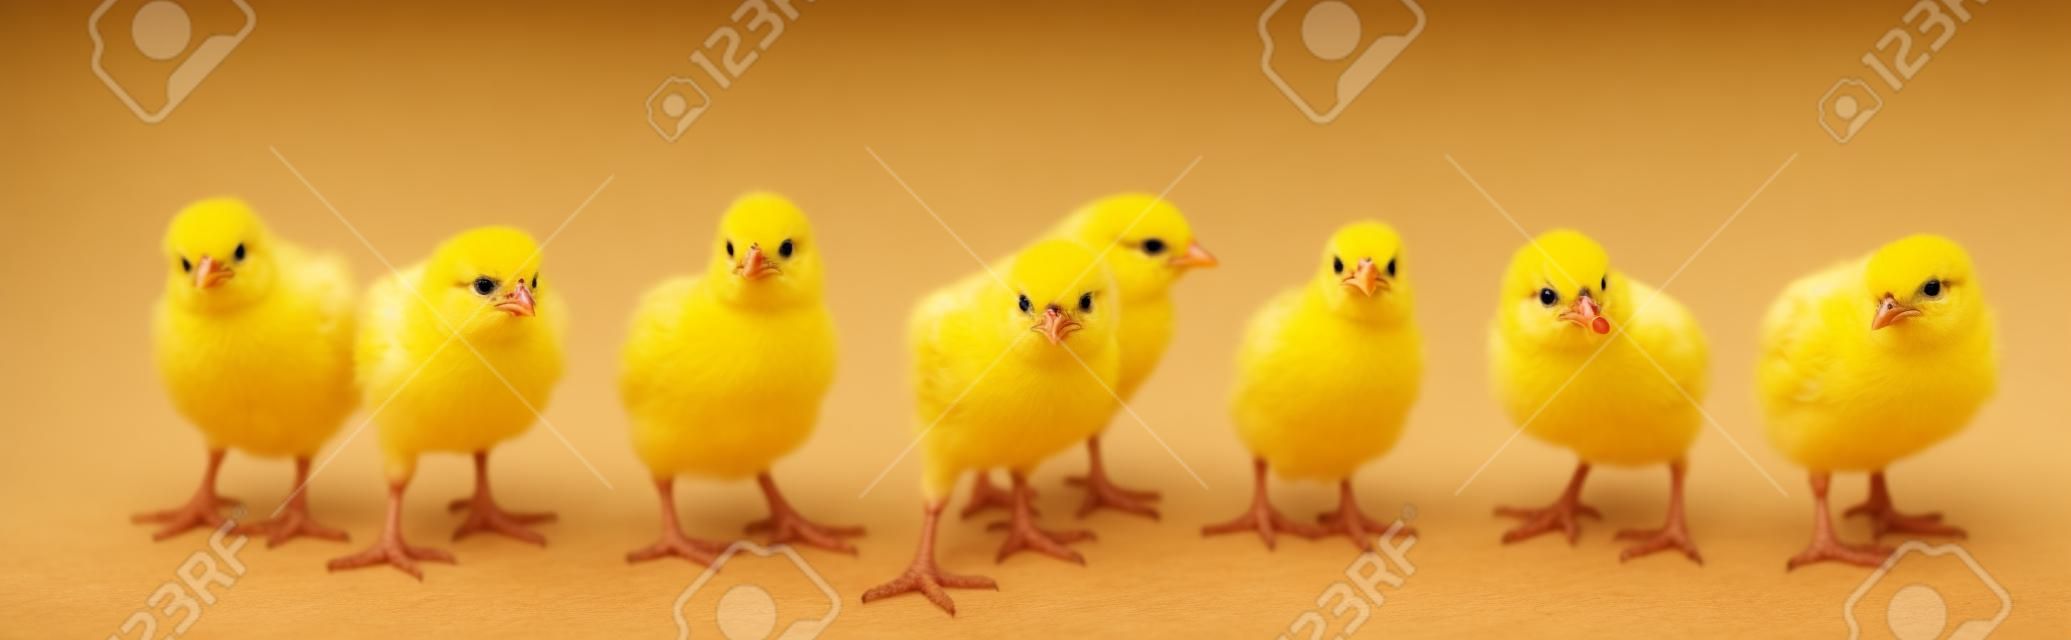 흰색 배경에 고립 된 작은 노란 병아리의 파노라마. 도보에 농장 부화기 닭.